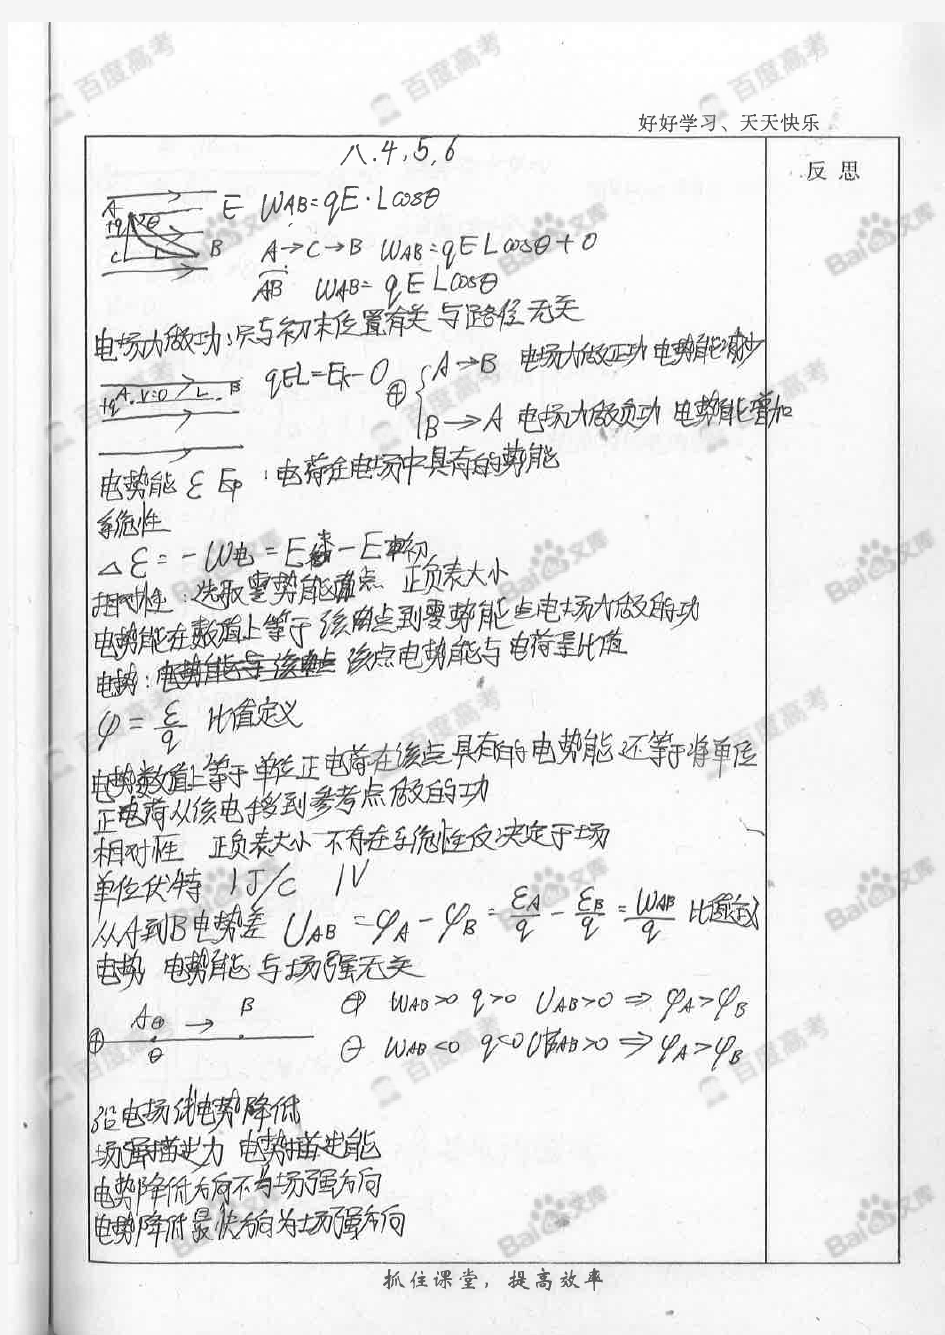 高中物理知识点笔记_part3_河北衡水中学理科学霸_2016年高考状元笔记